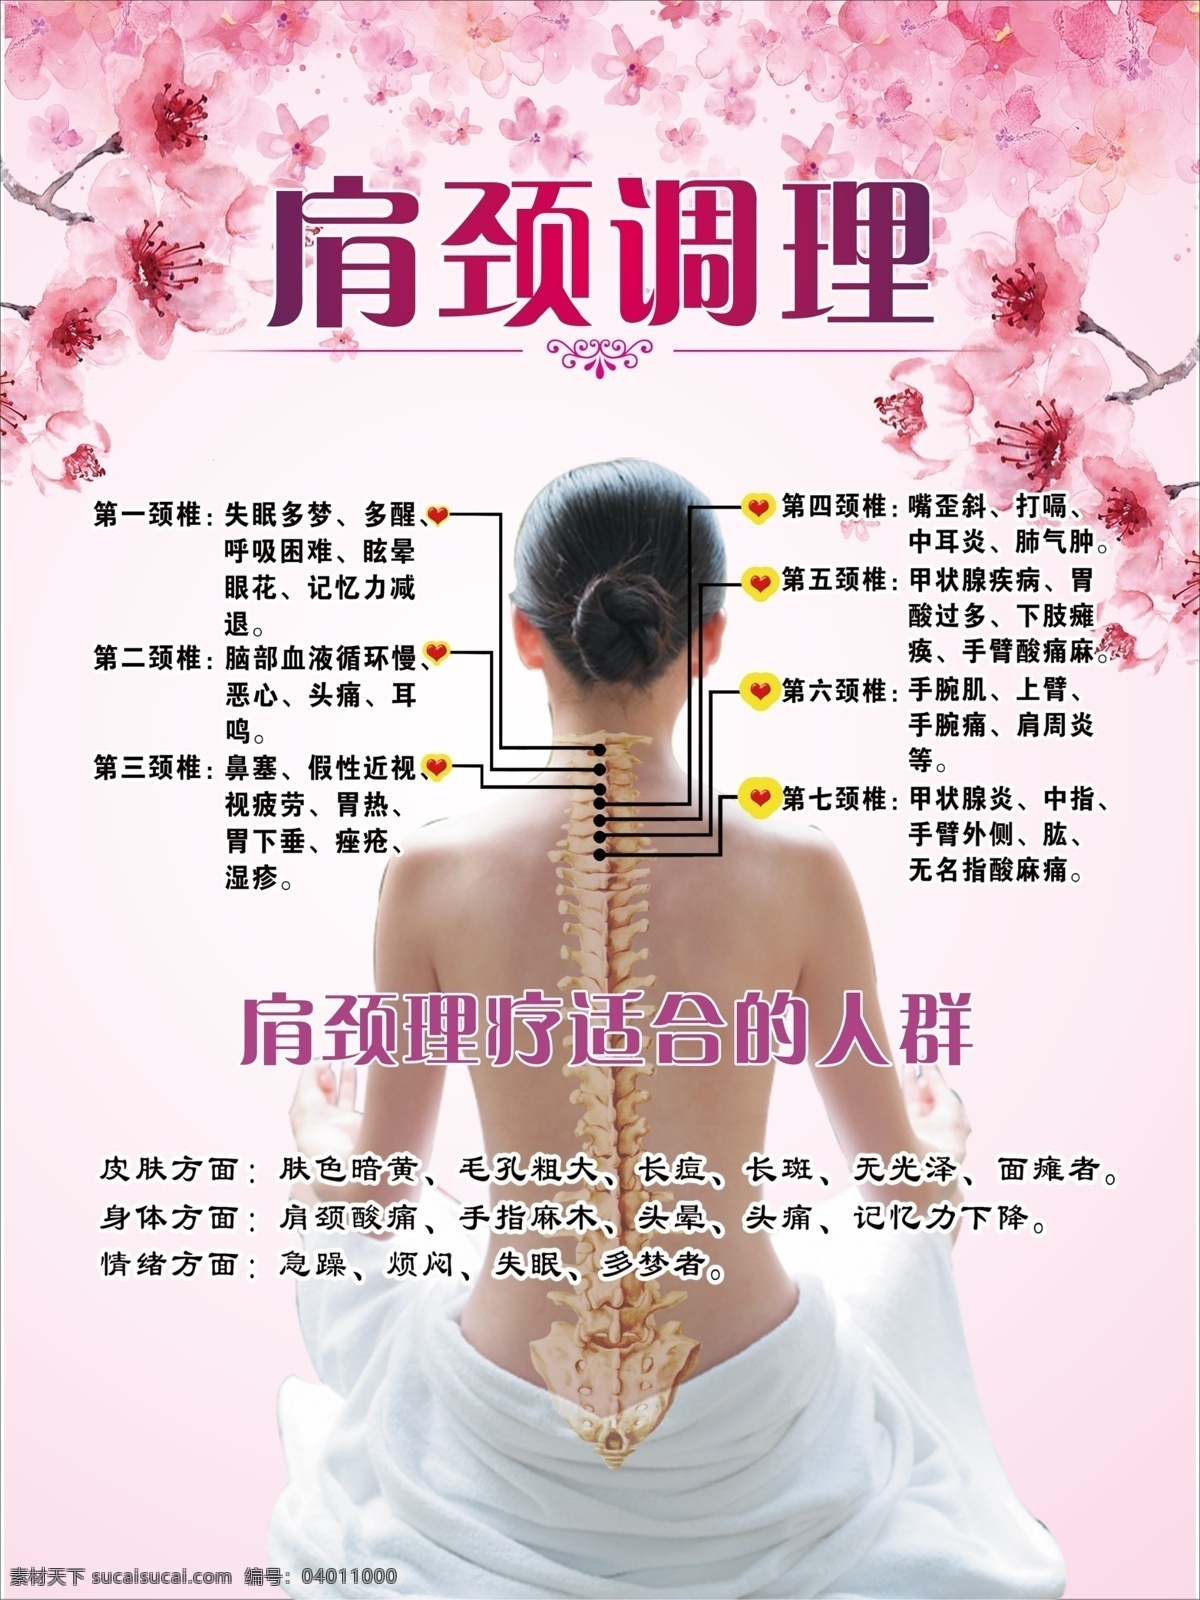 中医养生 身体护理 保养 美容宣传 广告 贴画 海报 功效 好处 肩颈调理